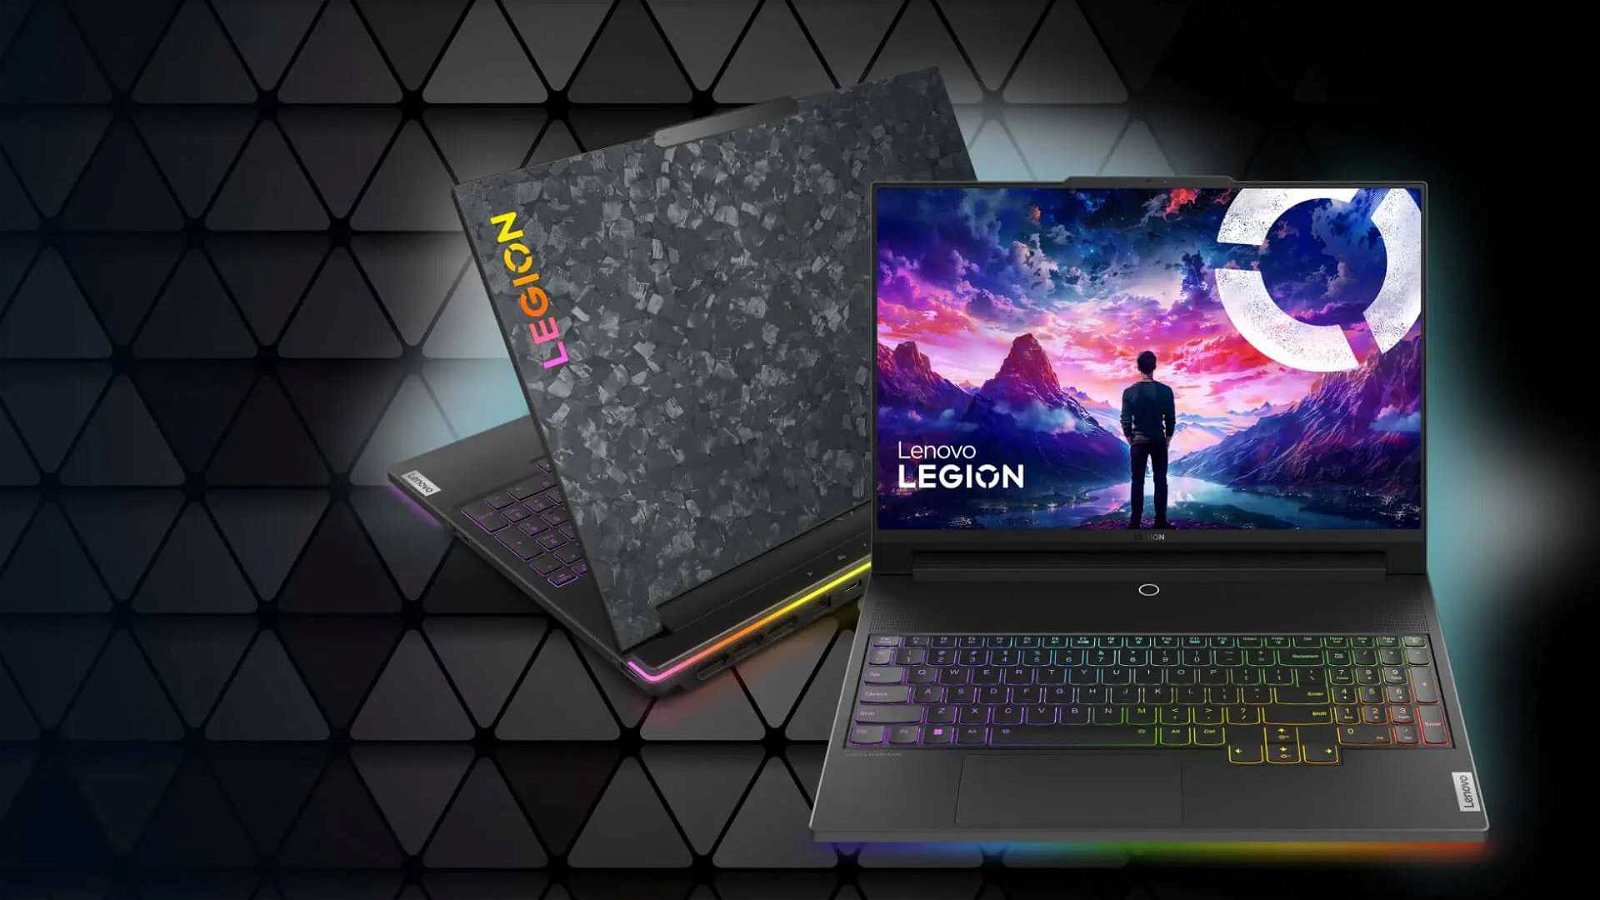 Immagine di Lenovo Legion è la migliore scelta tra i laptop gaming, grazie a Lenovo AI Engine+